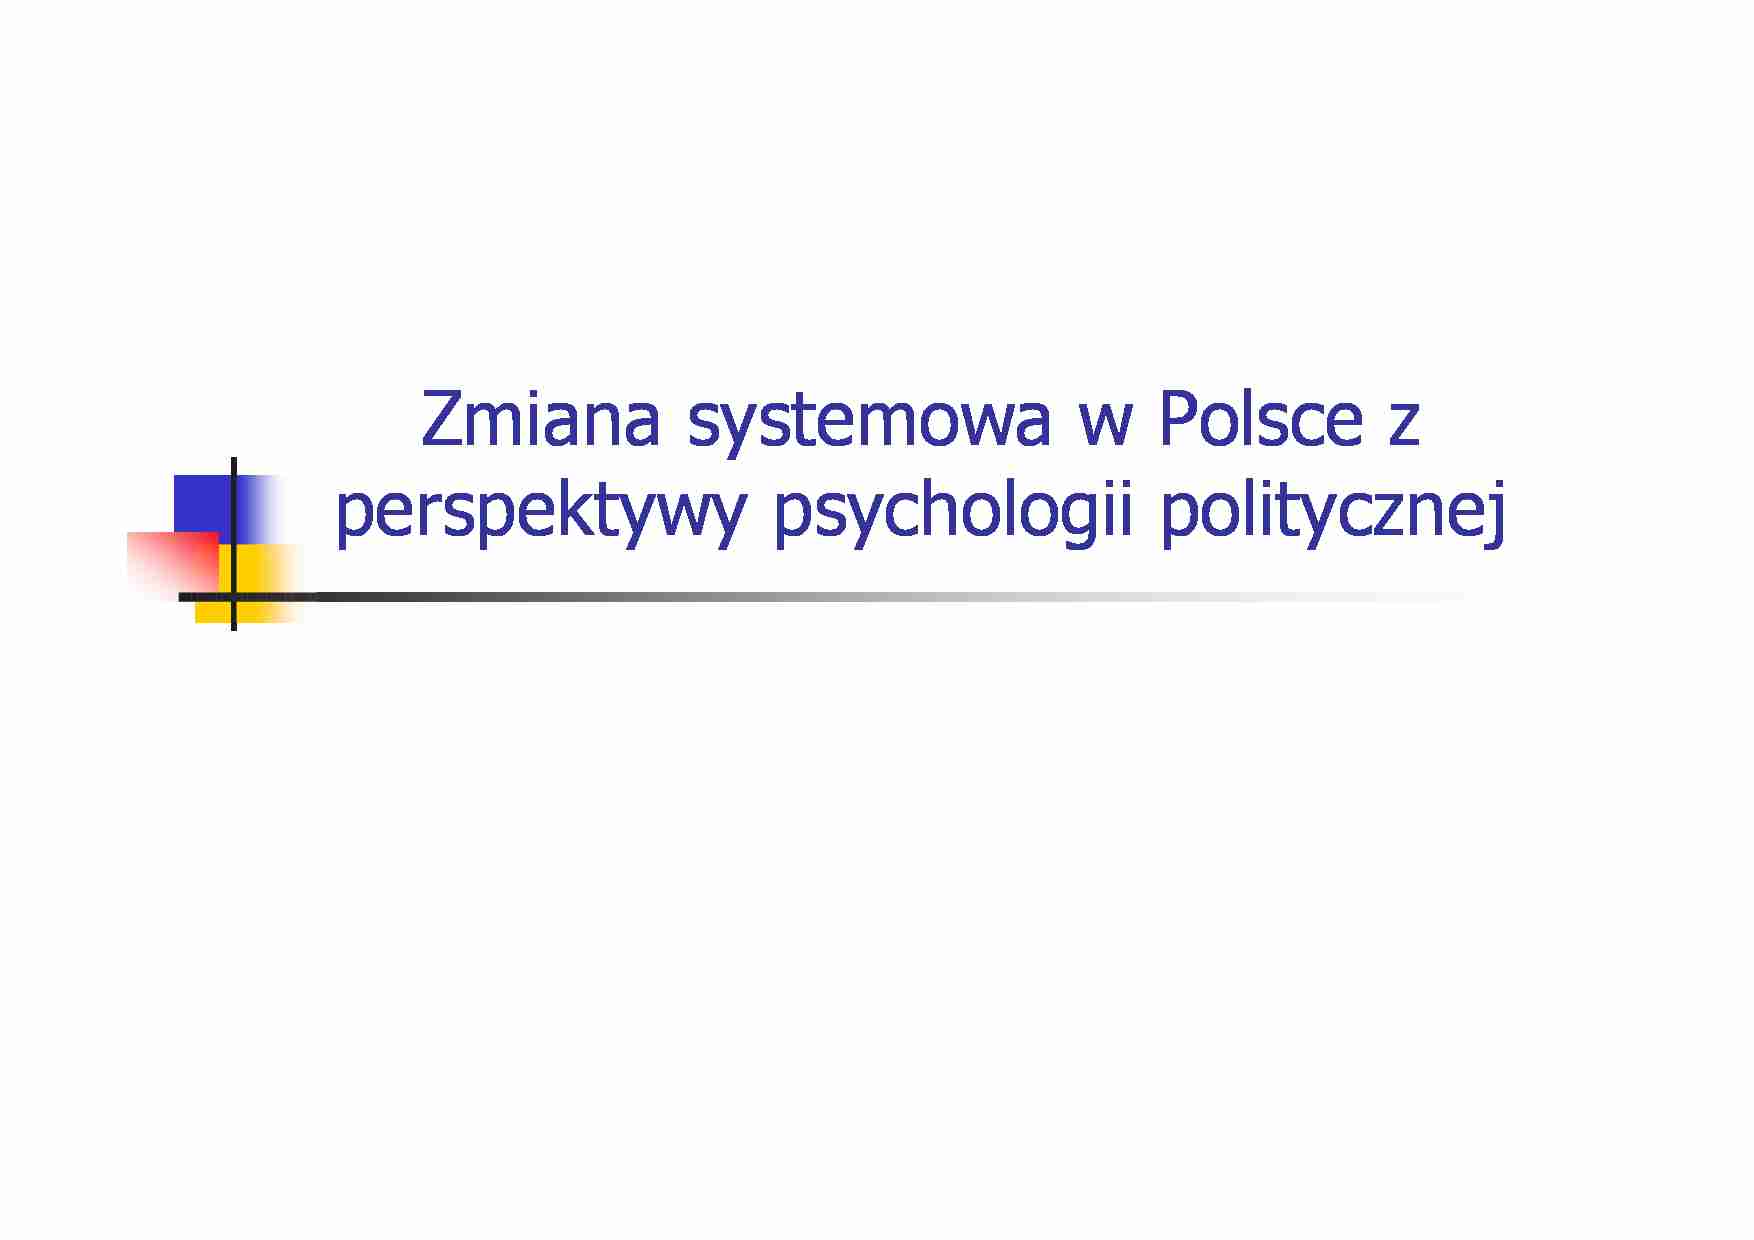 Psychologia polityczna  a zmiana systemowa w Polsce - strona 1